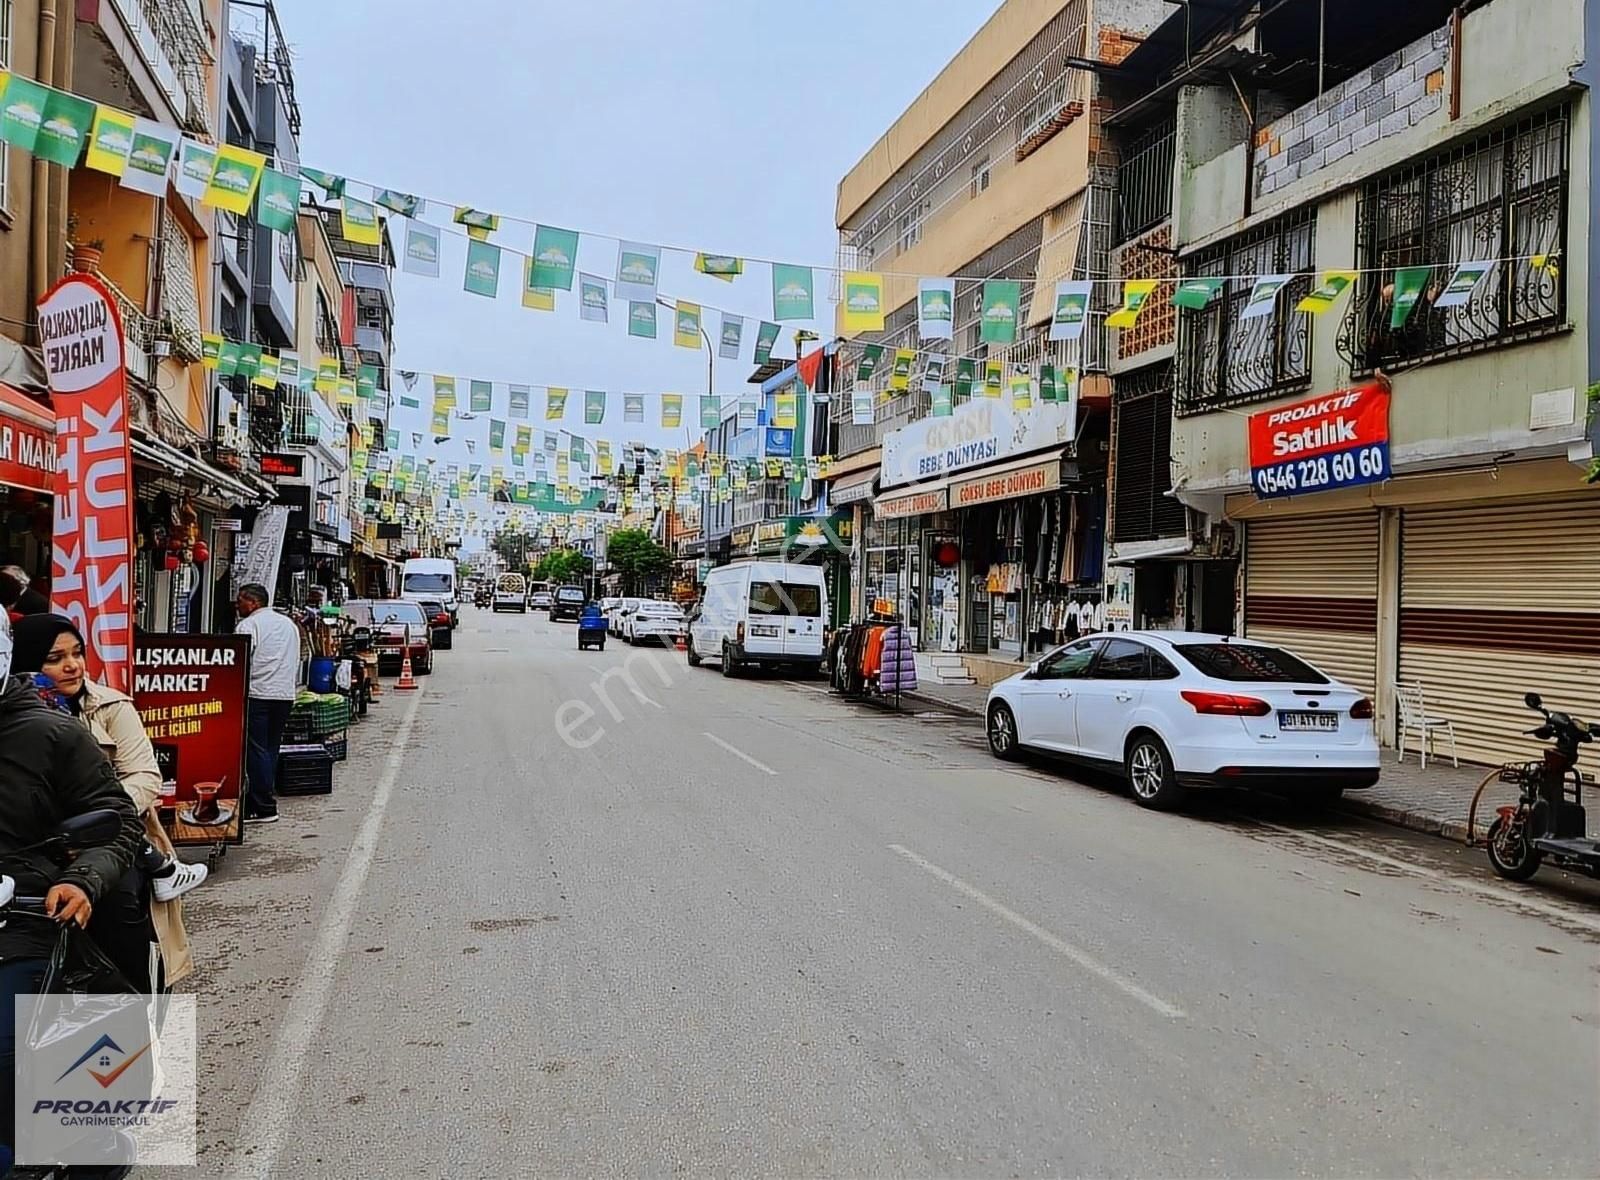 Seyhan Dumlupınar Satılık Dükkan & Mağaza Kıbrıs Caddesinin En Hareketli Noktasında 3 Katlı